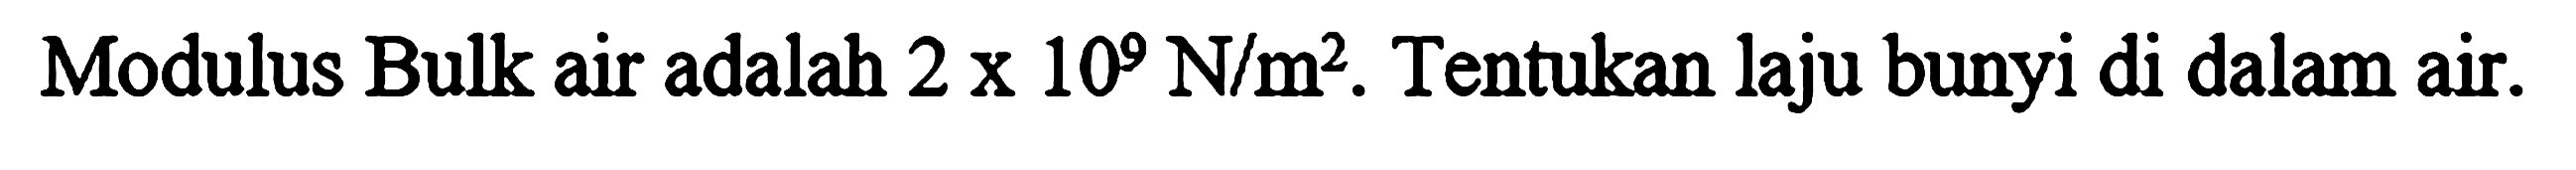 Modulus Bulk air adalah 2 x 10^9 N/m^2. Tentukan laju bunyi di dalam air.